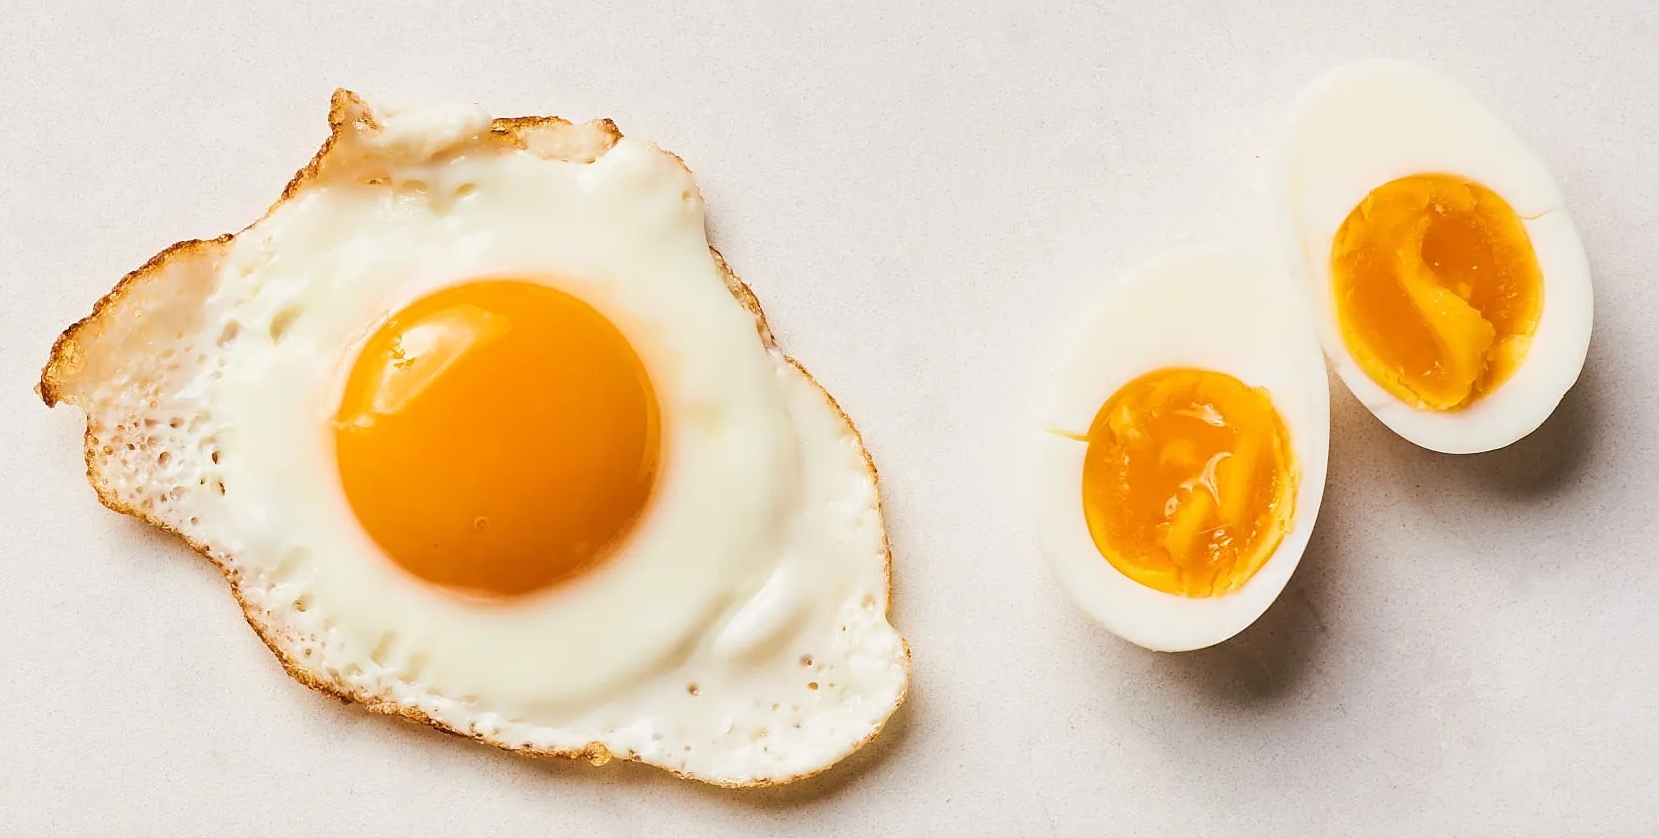 Αυτοί είναι οι τέσσερις πιο συχνοί μύθοι για τα αυγά